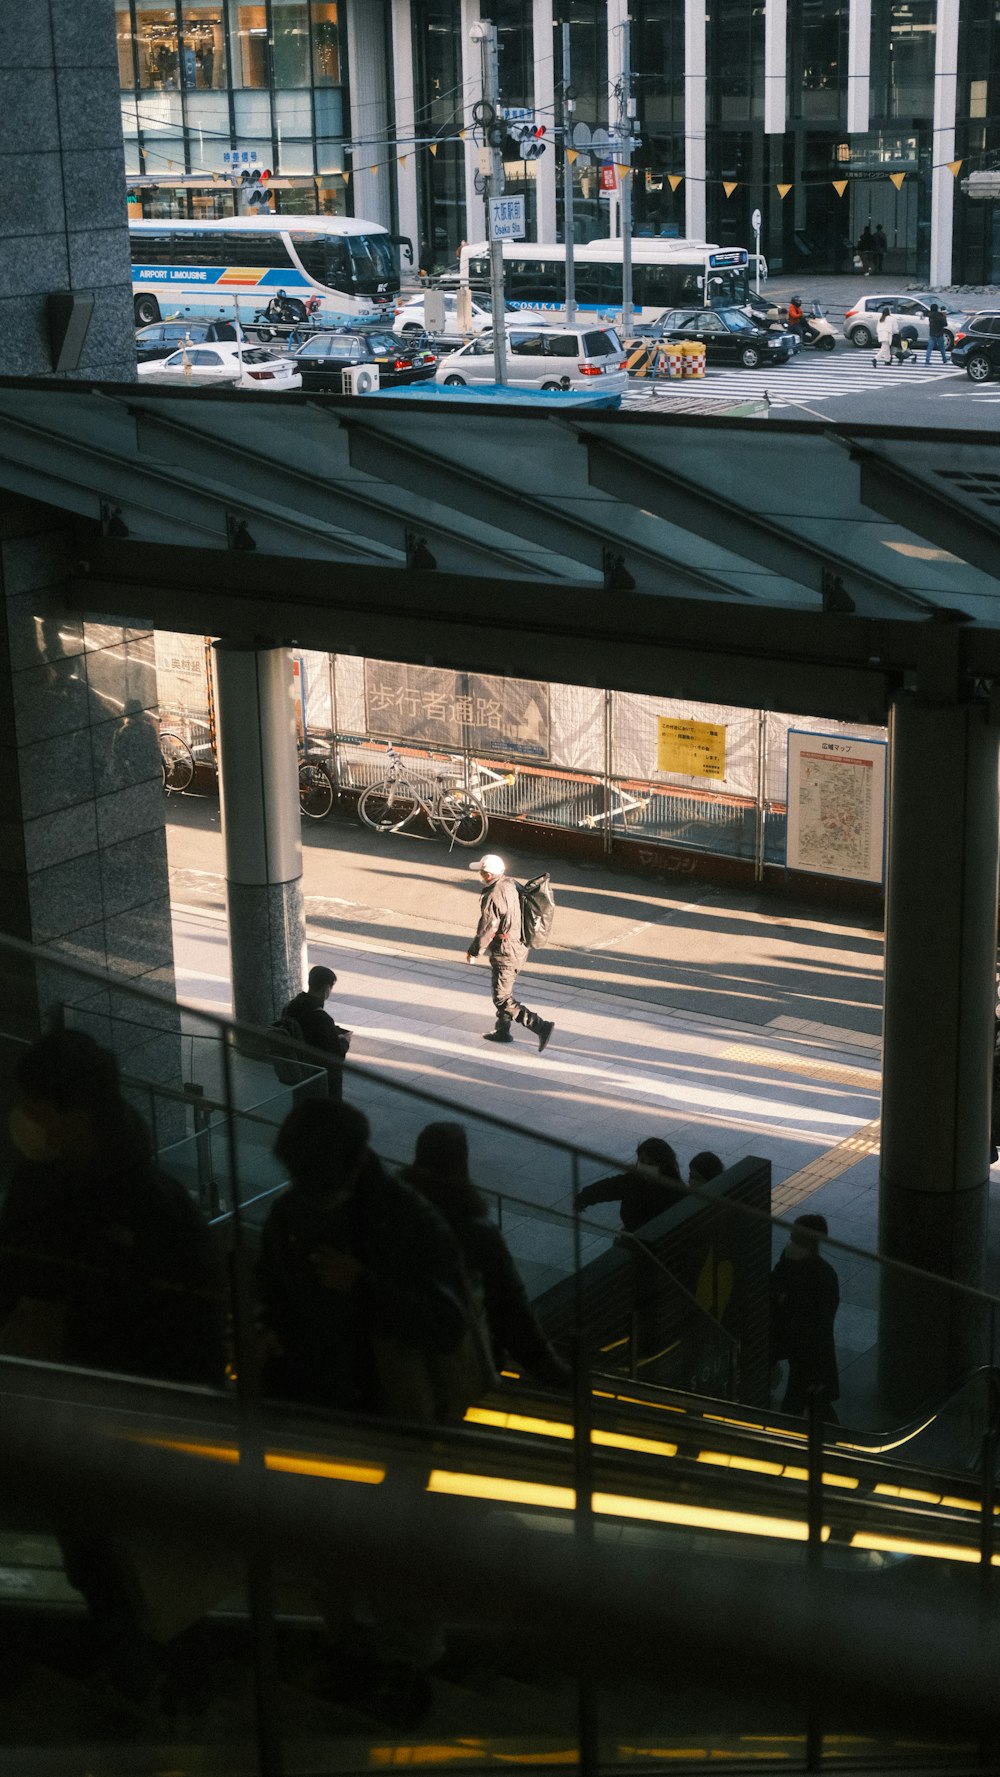 Un uomo che cavalca uno skateboard giù per una rampa di scale